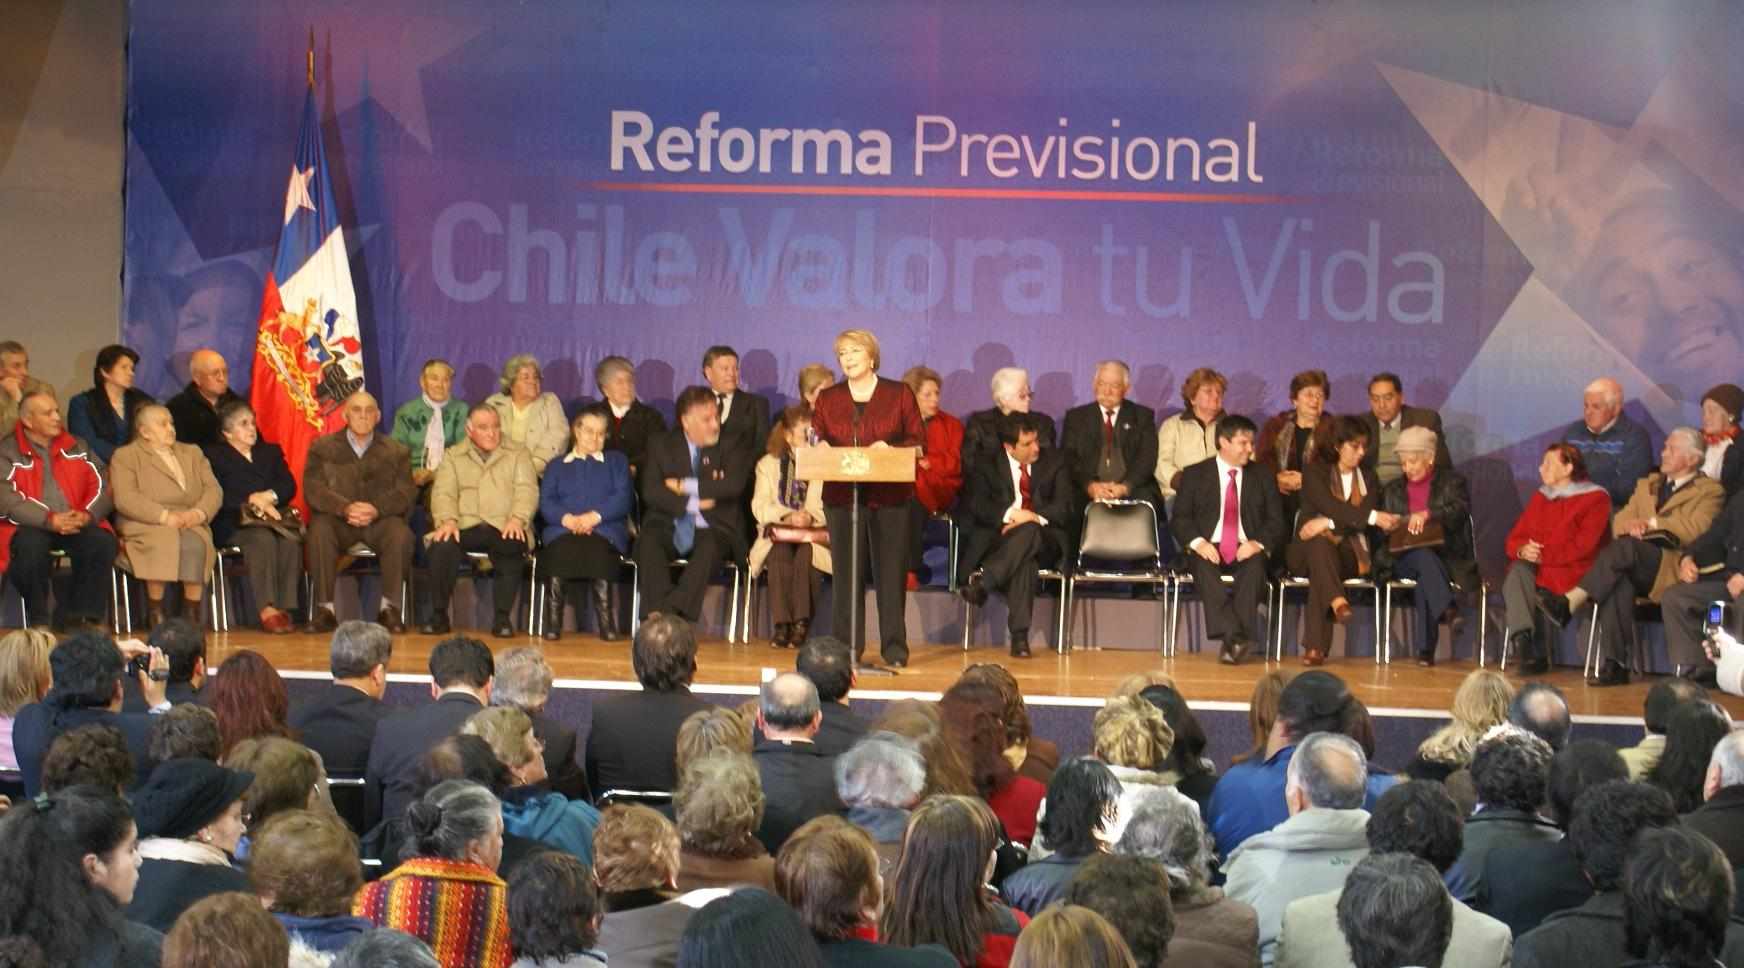 Posiciones divididas en el Parlamento tras anuncios de Bachelet para mejorar pensiones